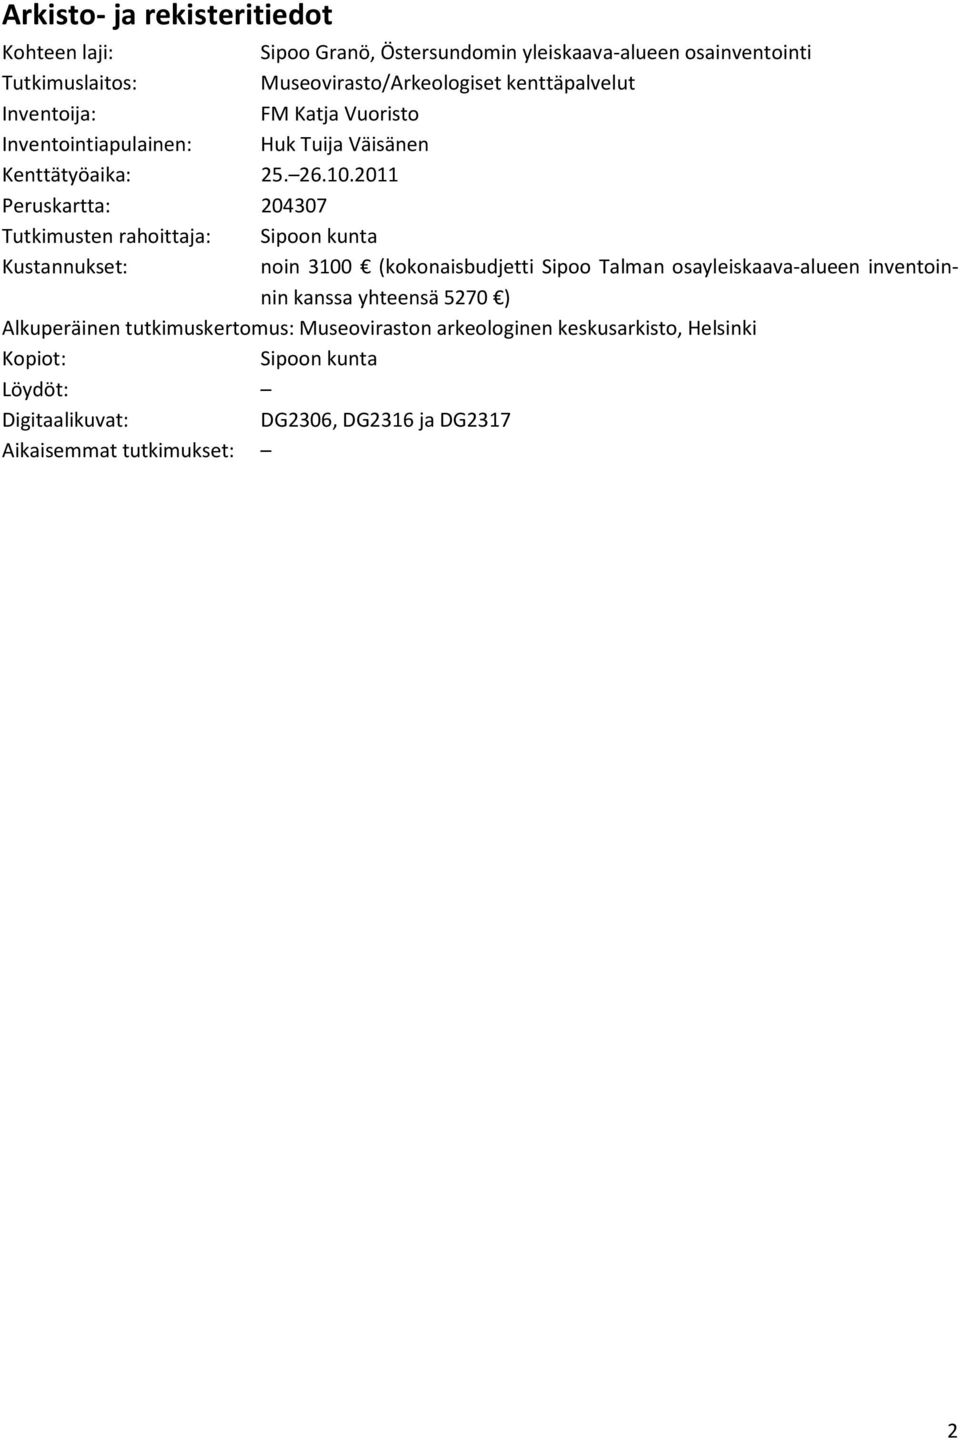 2011 Peruskartta: 204307 Tutkimusten rahoittaja: Sipoon kunta Kustannukset: noin 3100 (kokonaisbudjetti Sipoo Talman osayleiskaava-alueen inventoinnin